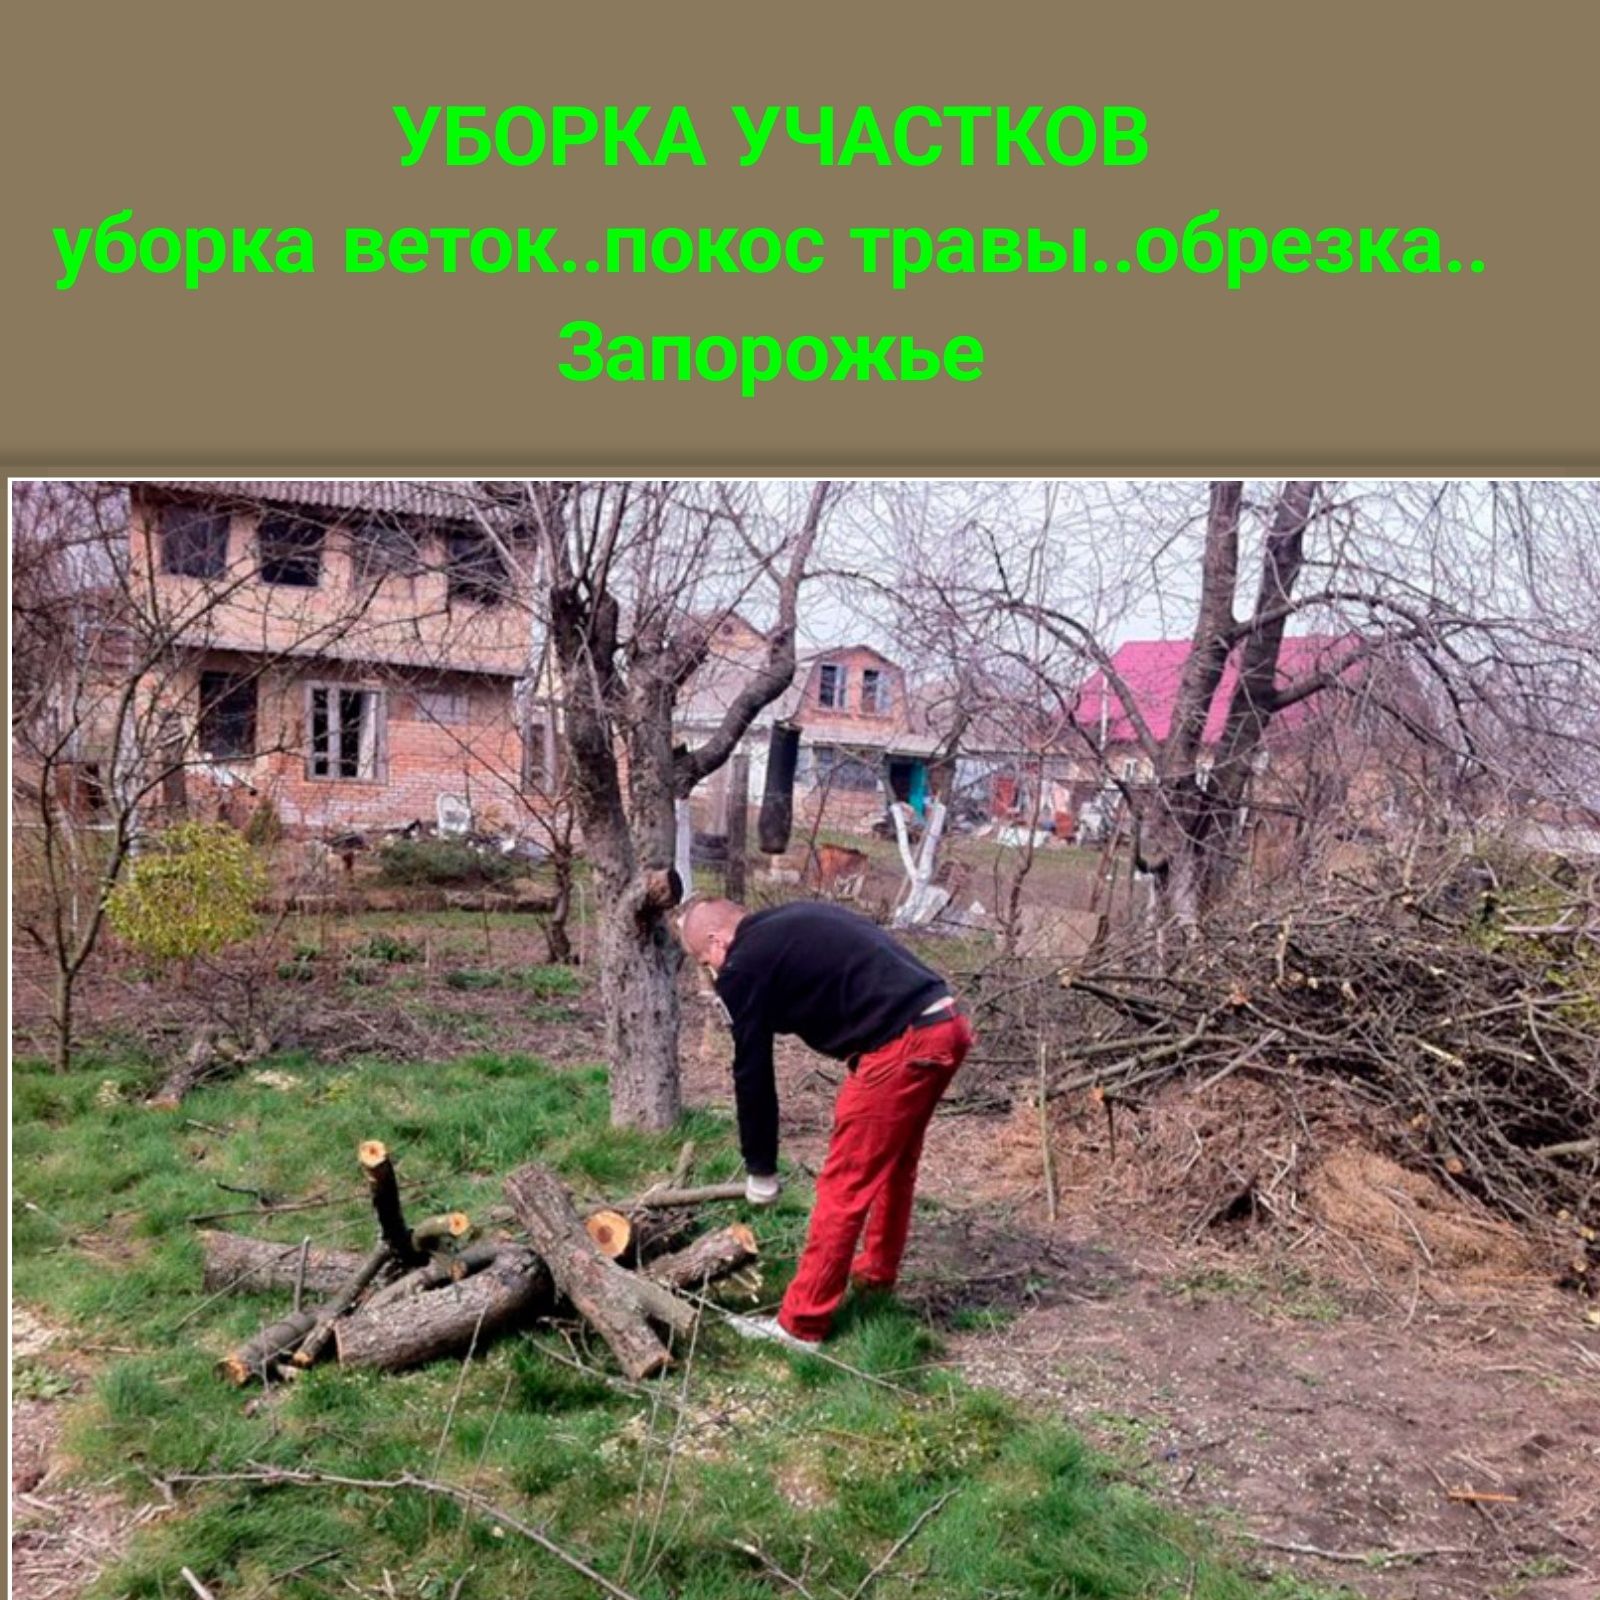 Уборка участков копка земли|СпилОбрезка деревьев Демонтаж/Разнорабочий